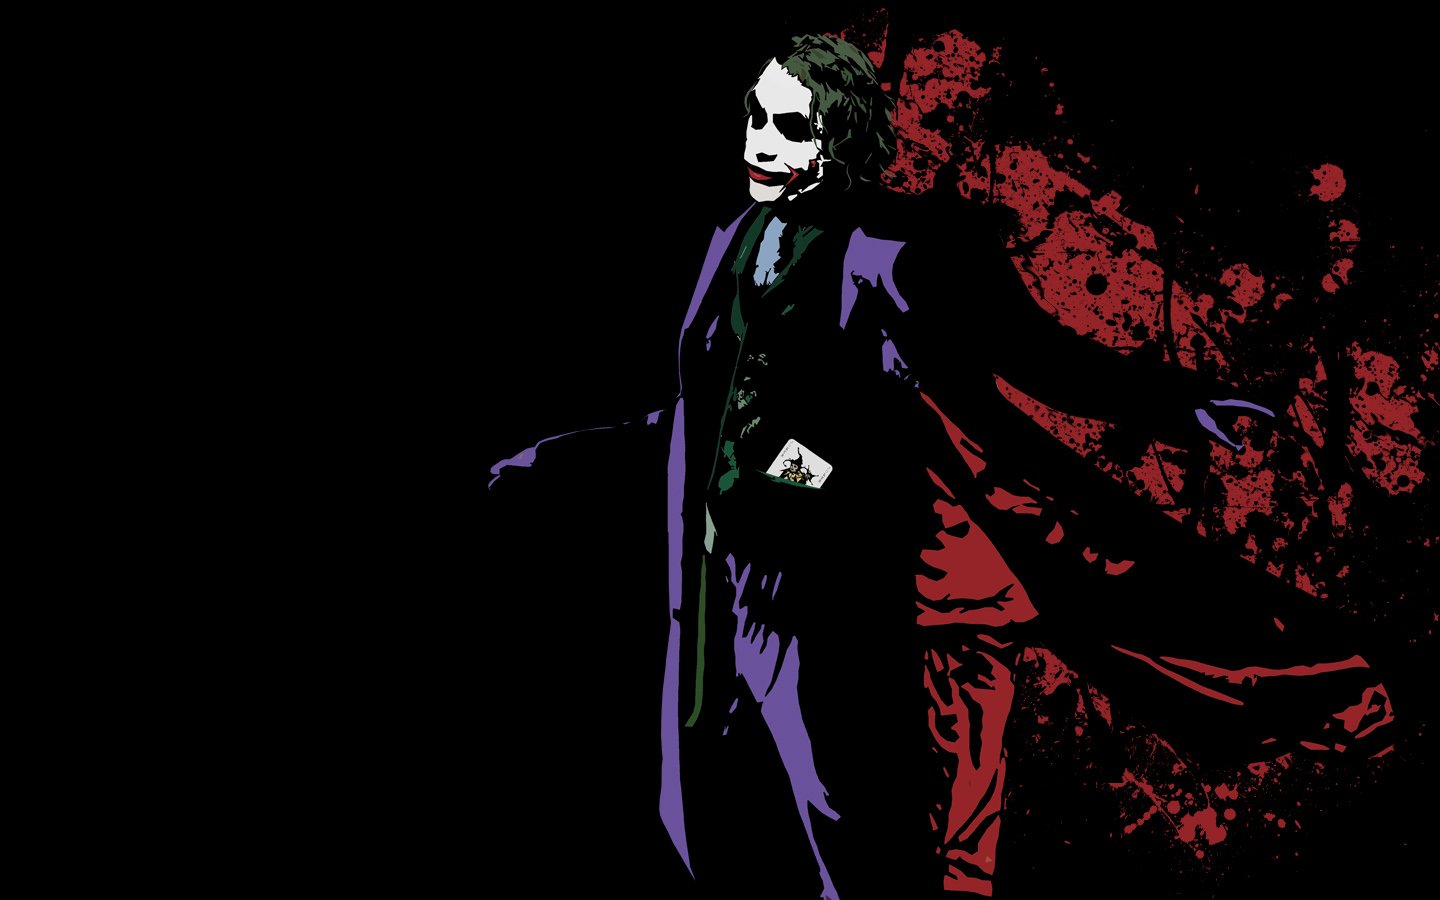 joker hd wallpaper,fictional character,supervillain,joker,batman,illustration